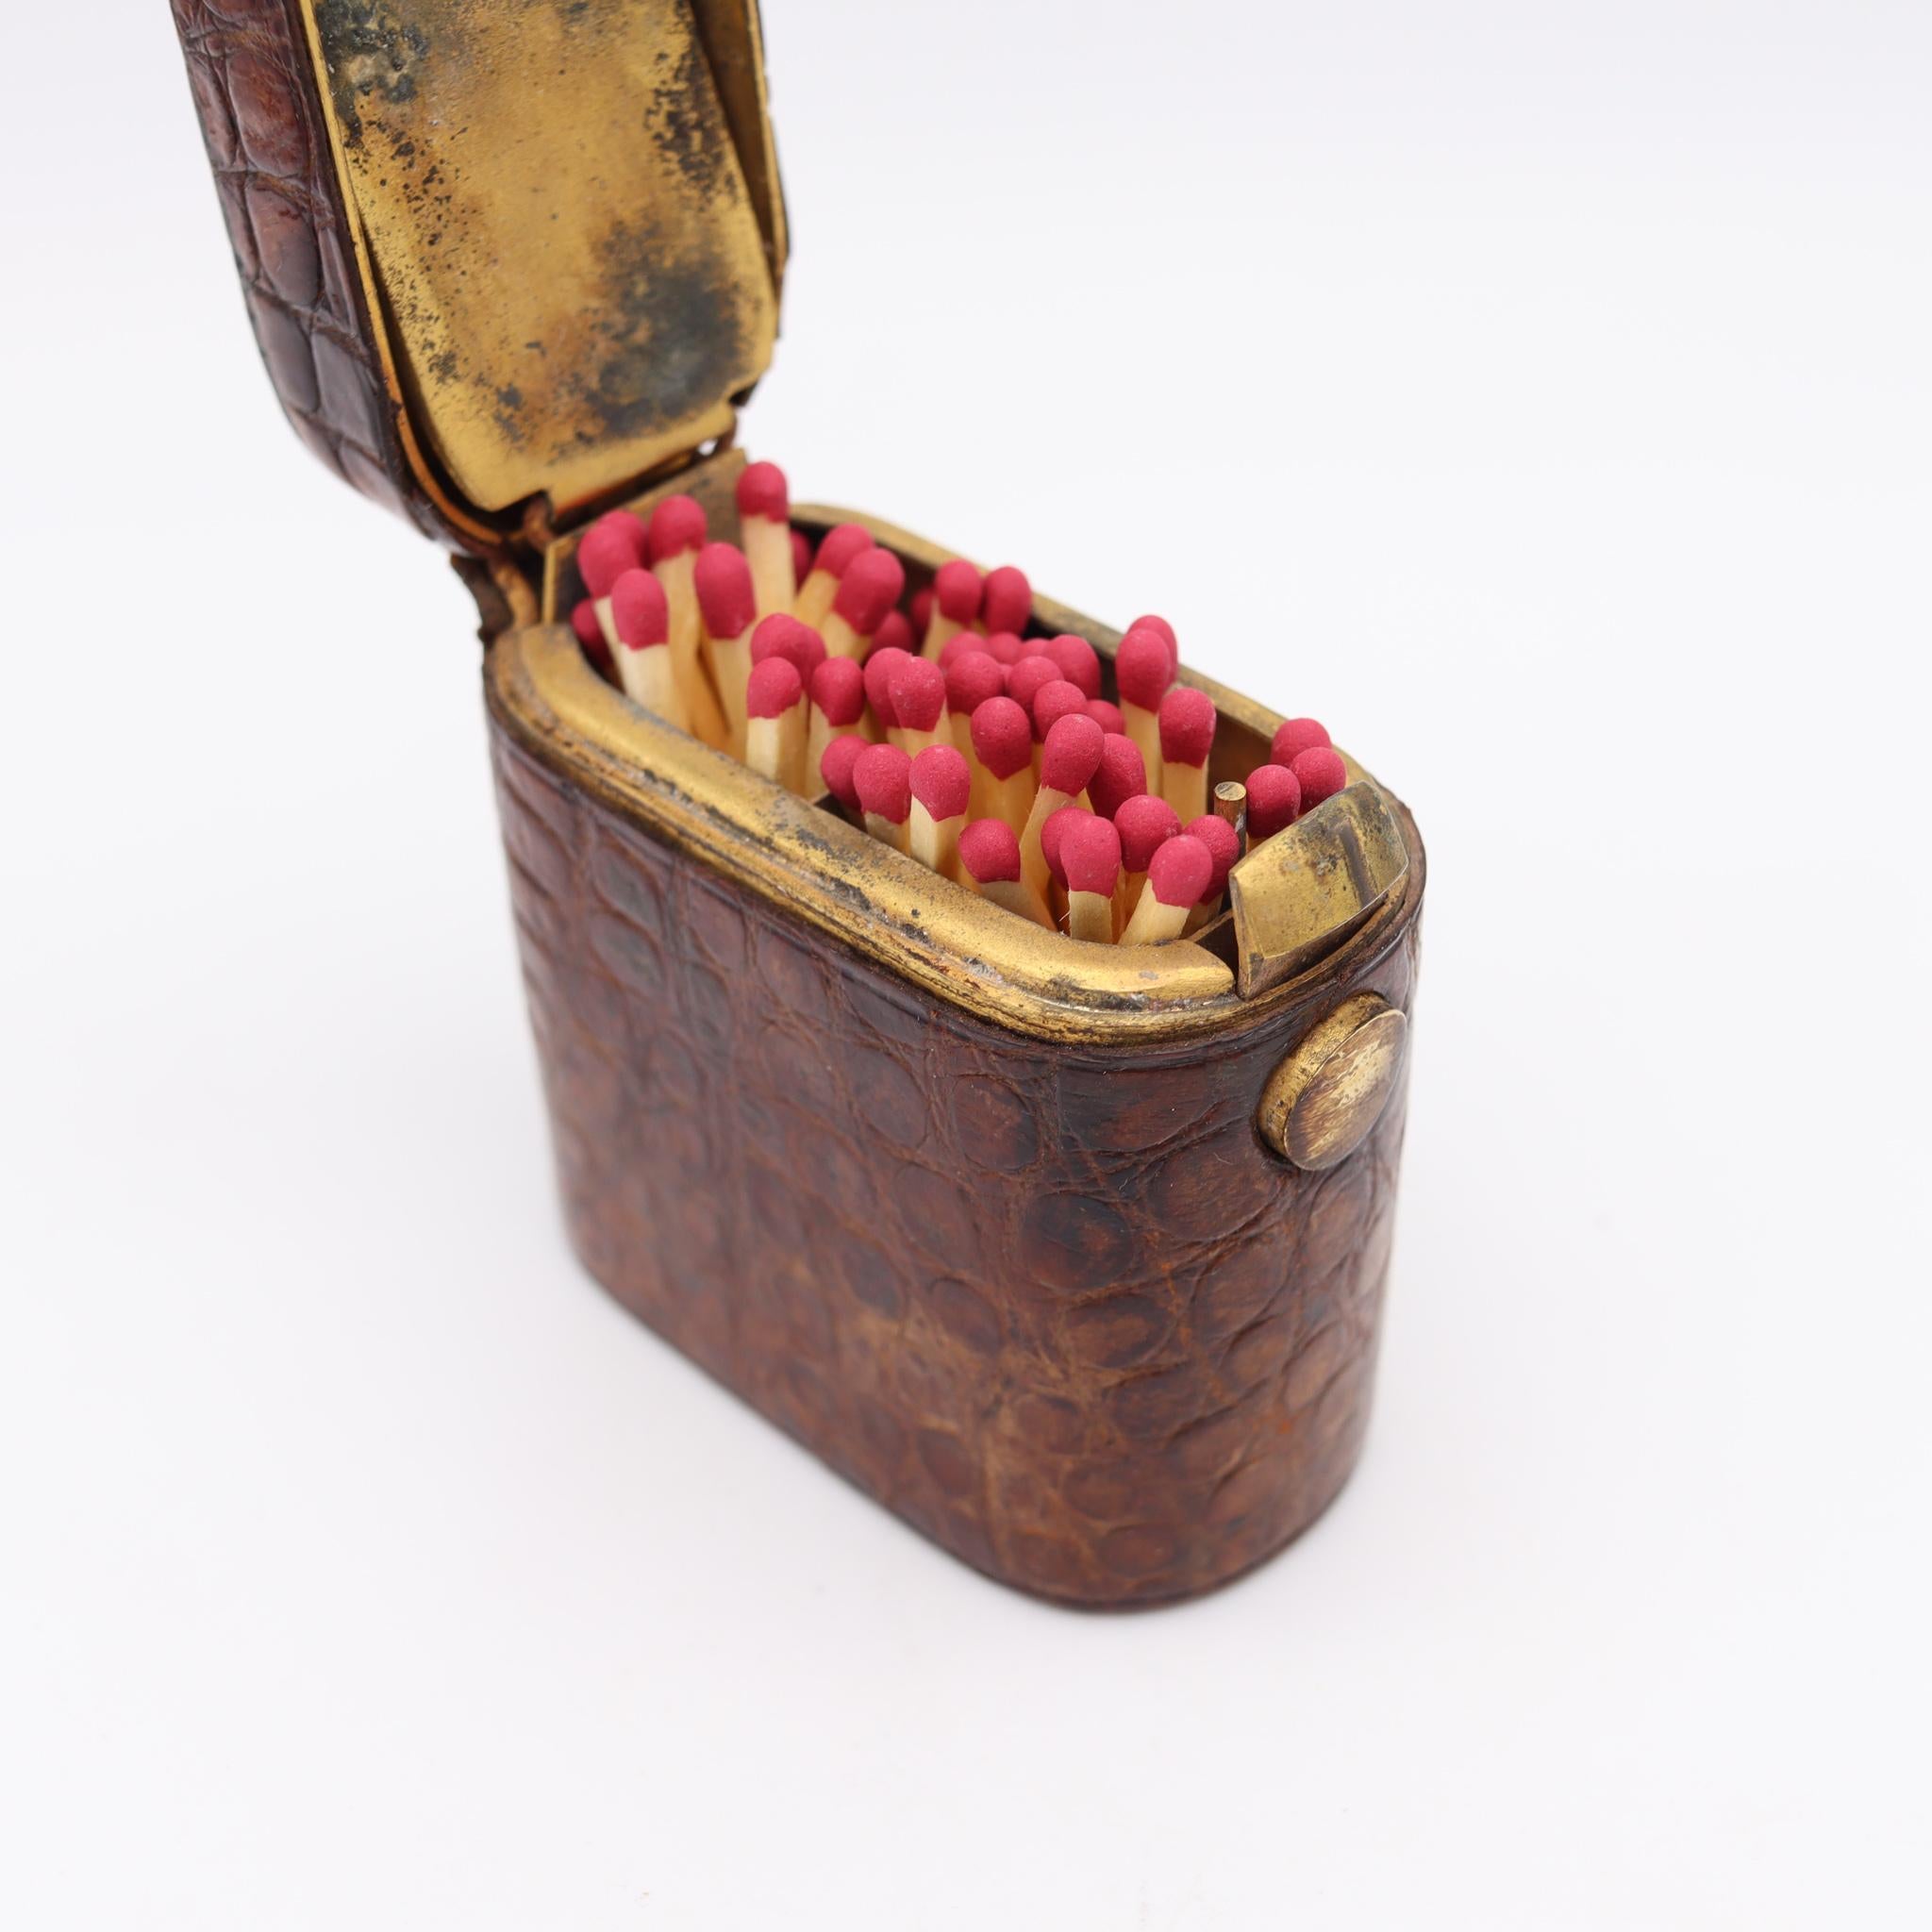 Edwardian Schreibtisch Streichhölzer Box mit Krokodilleder.

Schöne und sehr ungewöhnliche Schachtel, die in England während der Edwardianischen Periode, im Jahr 1905, hergestellt wurde. Dies ist eine sehr dekorative Streichholzschachtel aus